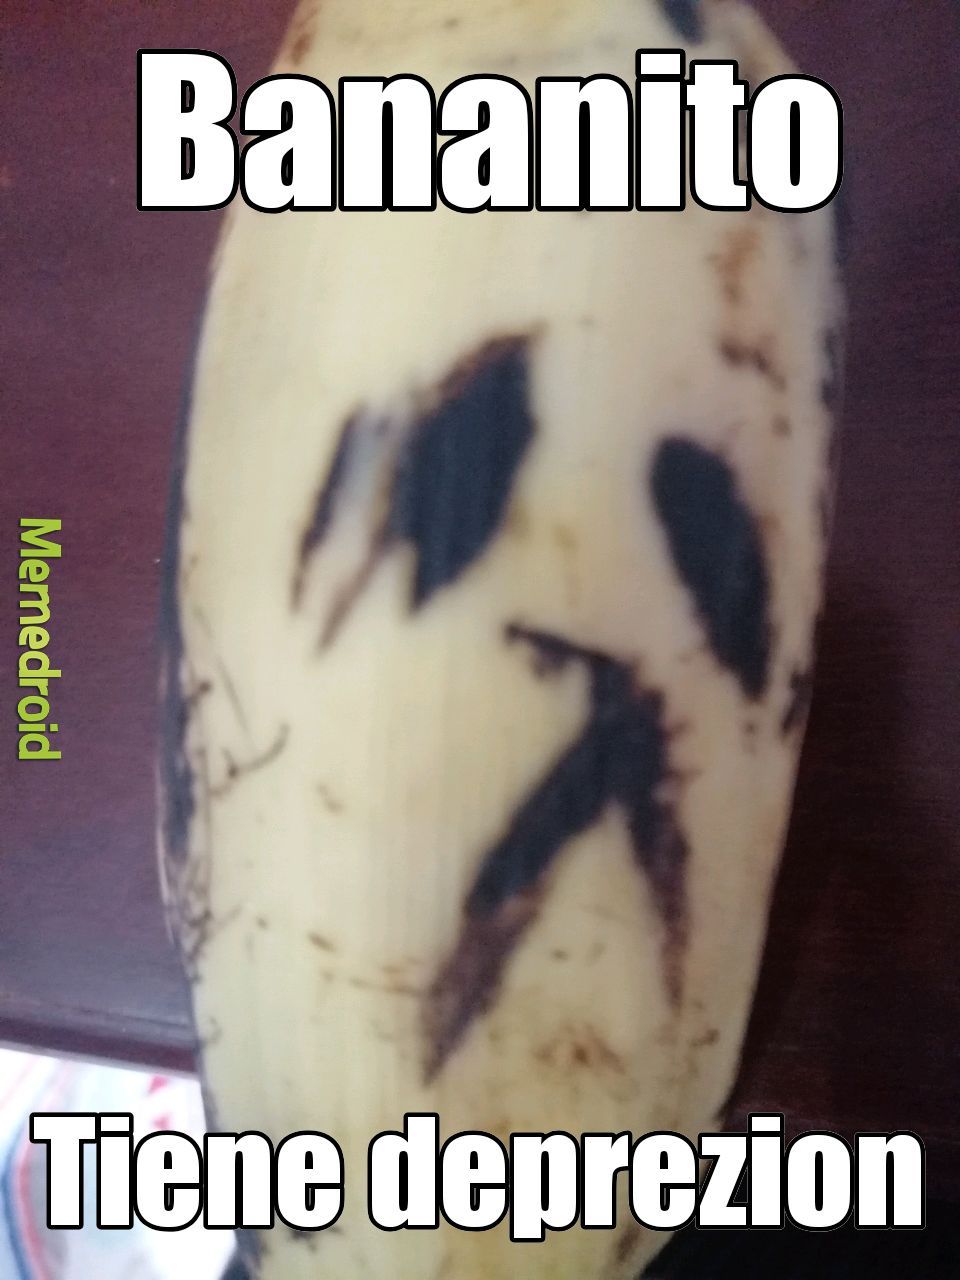 Ayuden a bananito ಥ╭╮ಥ - meme